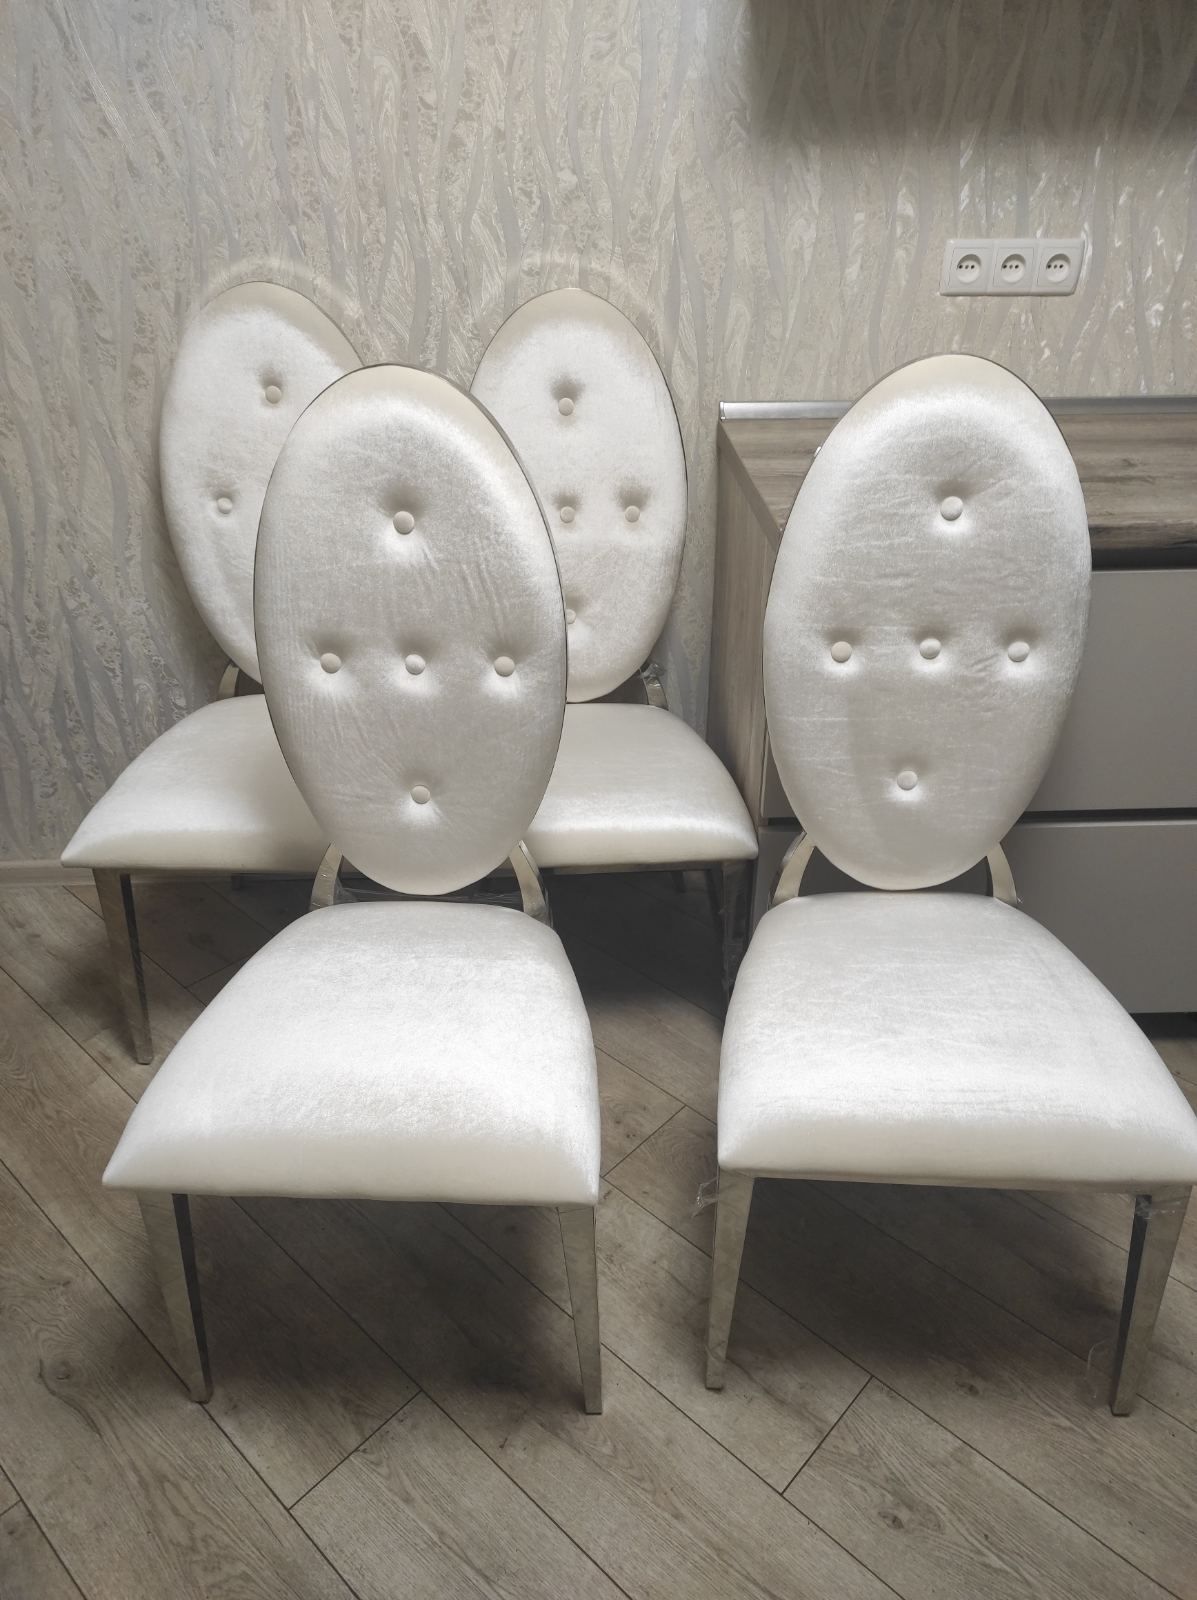 Продам новые эксклюзивные стулья. Производство Польша.